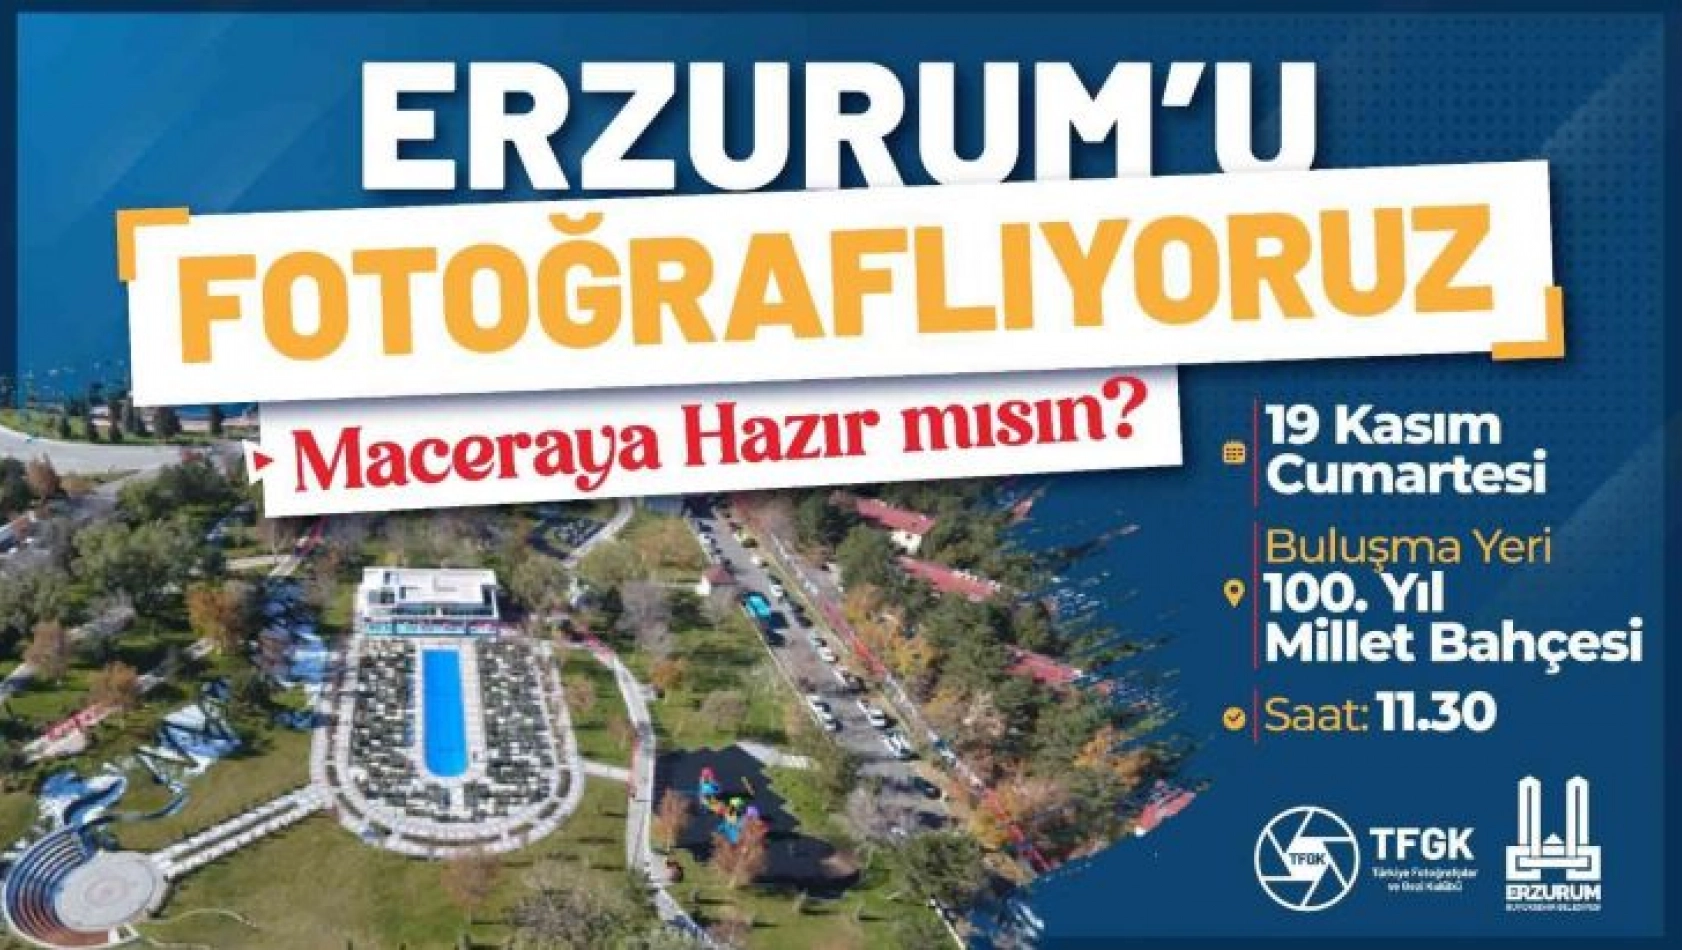 Erzurum'da fotoğraf ve tiyatro rüzgarı esecek